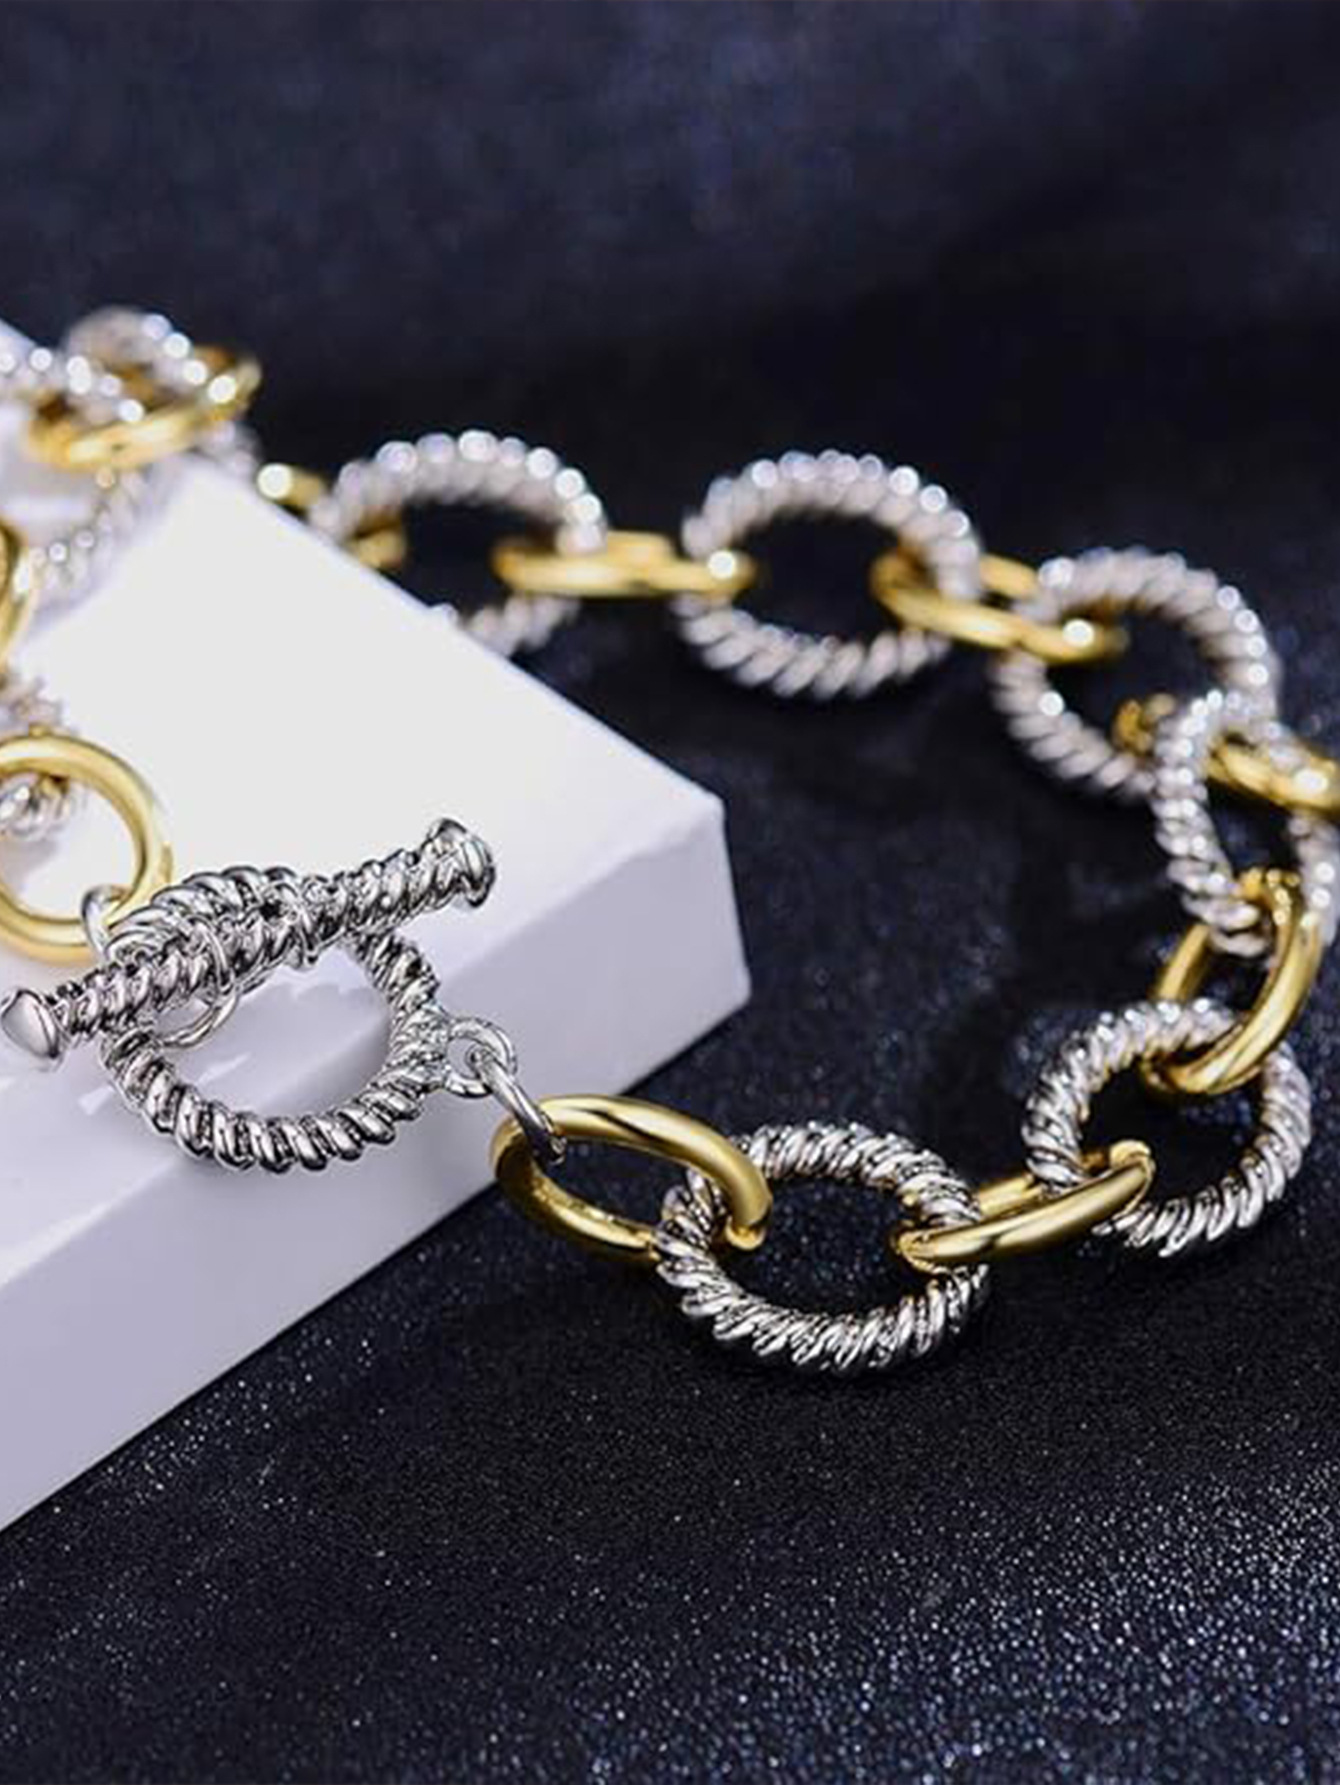 Dy Twisted Bracelet Классический роскошные браслеты дизайнер женщин для женщин модные украшения золото серебряная жемчуга кросс -хип горячие ювелирные украшения свадебный подарок оптом